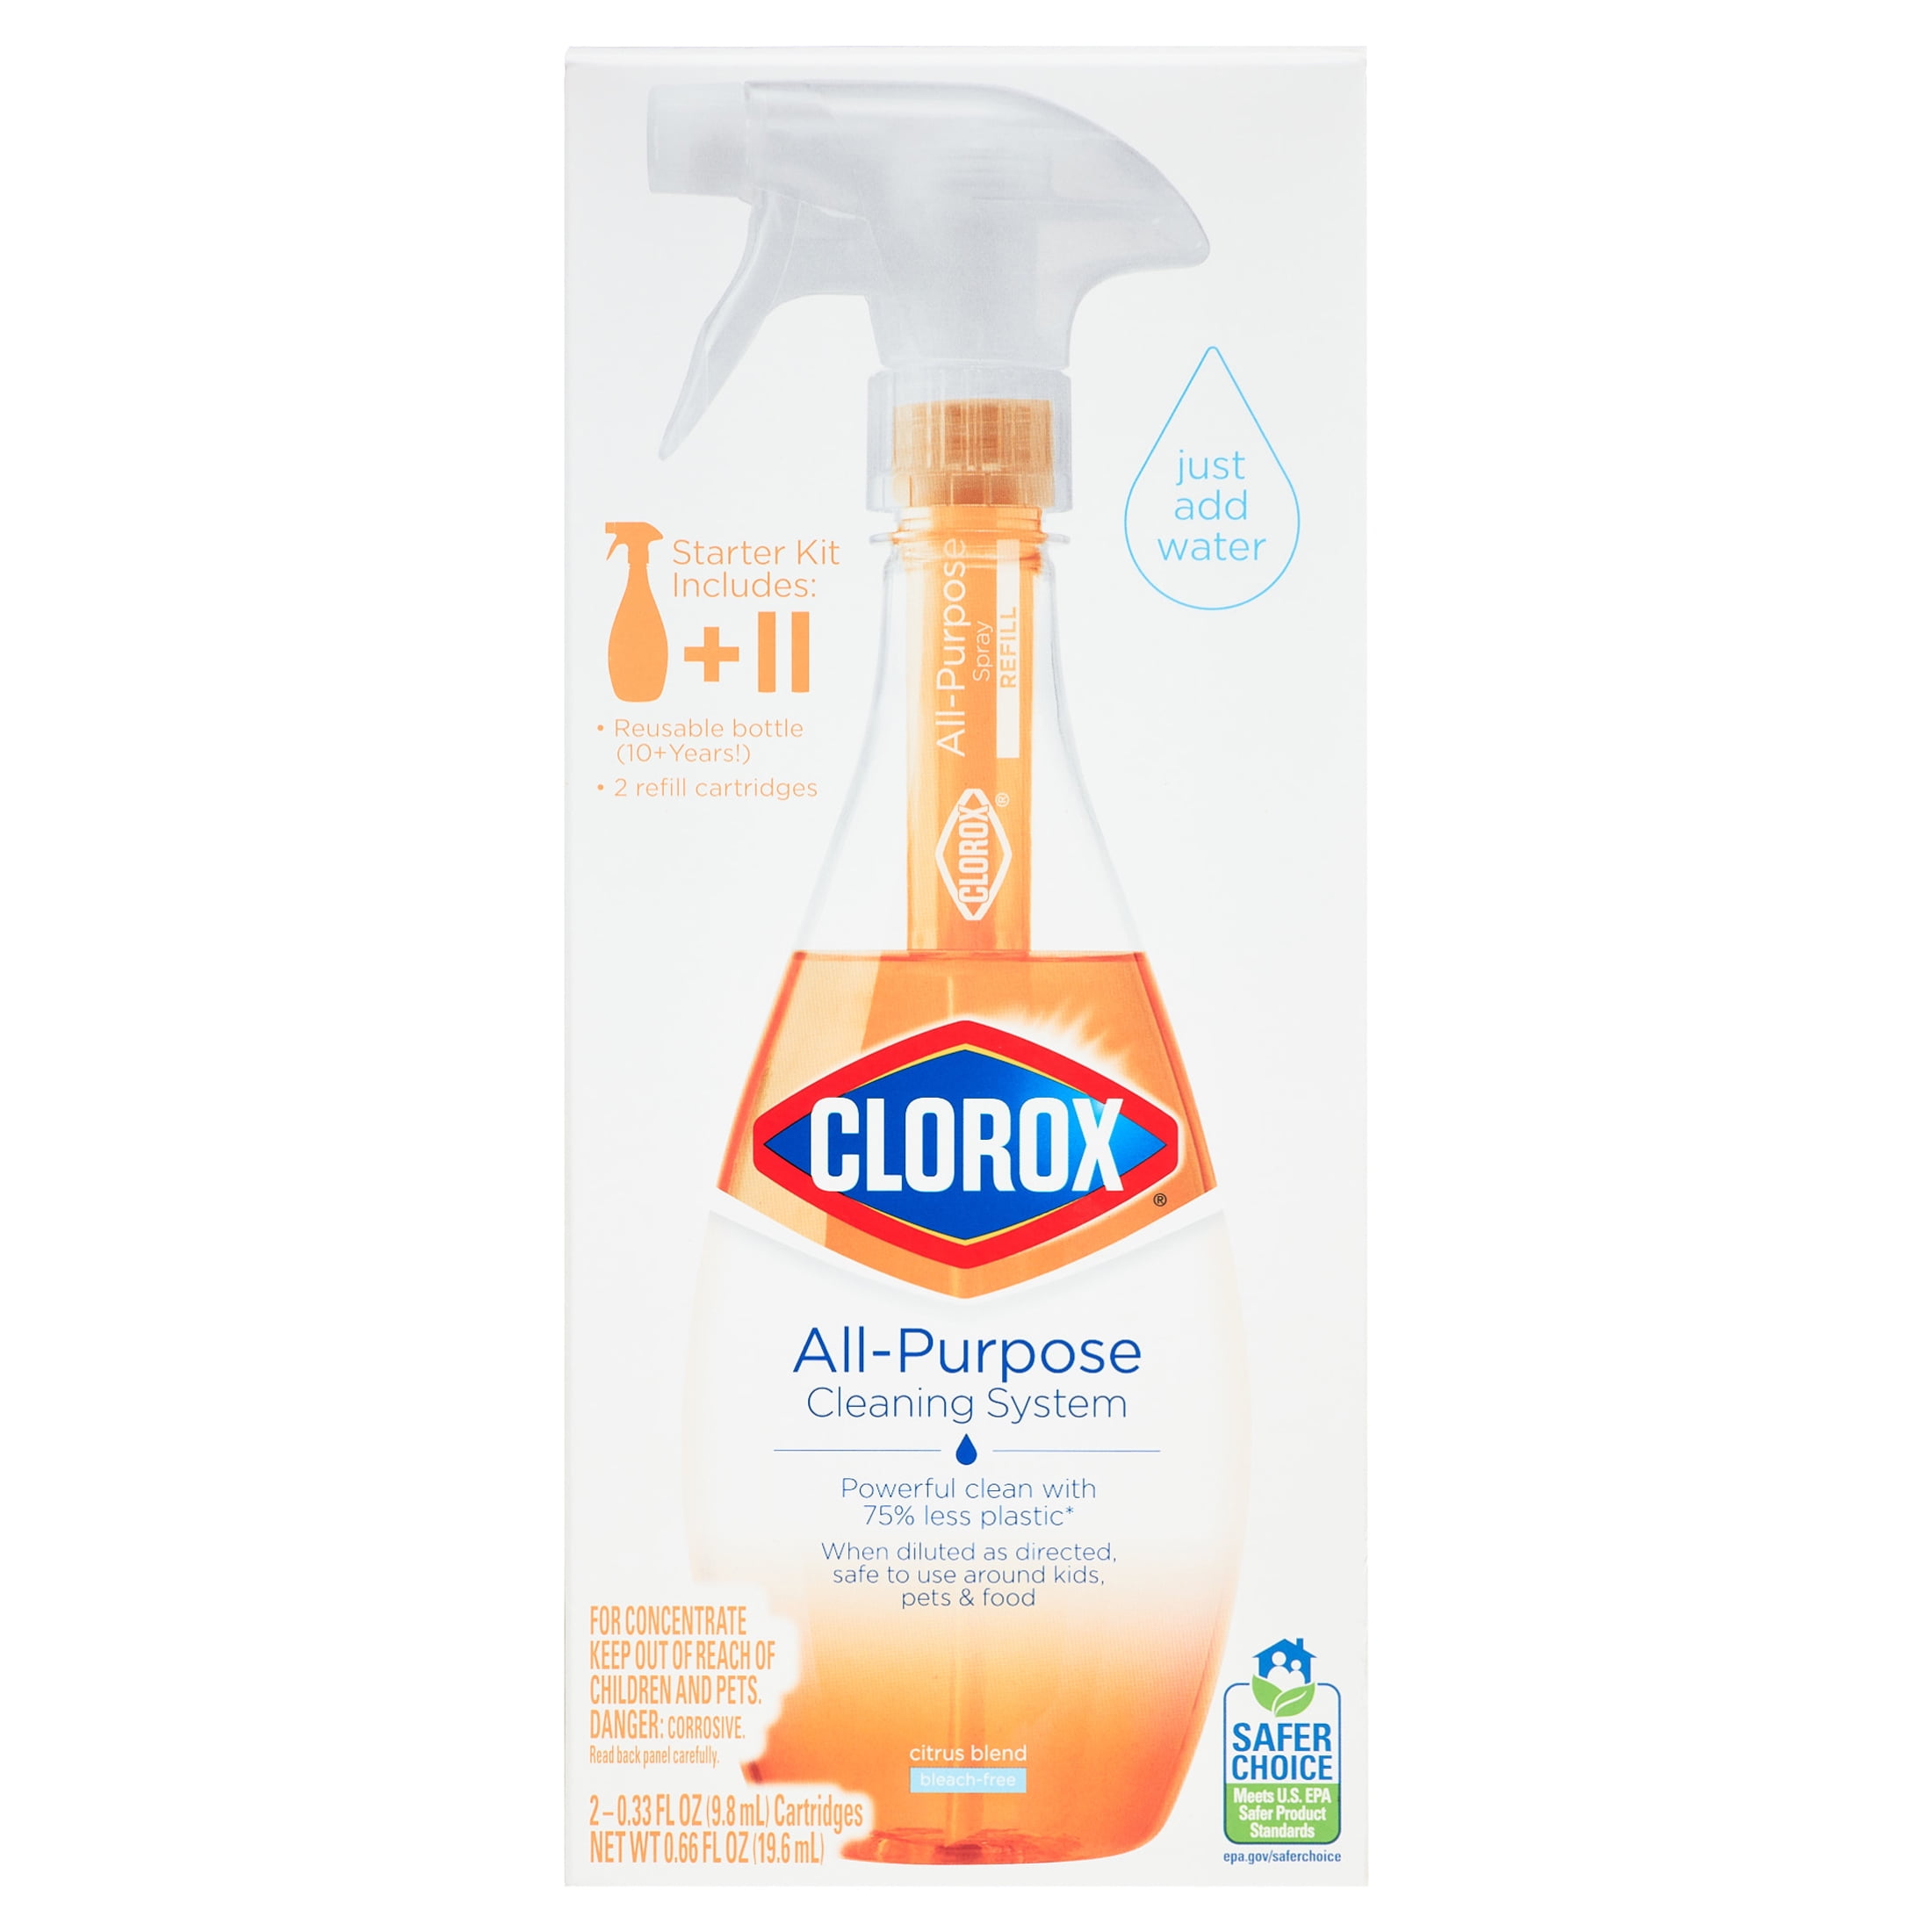 Clorox Bathroom Foamer with Bleach, Spray Bottle, Original, 30 oz-6 Count 